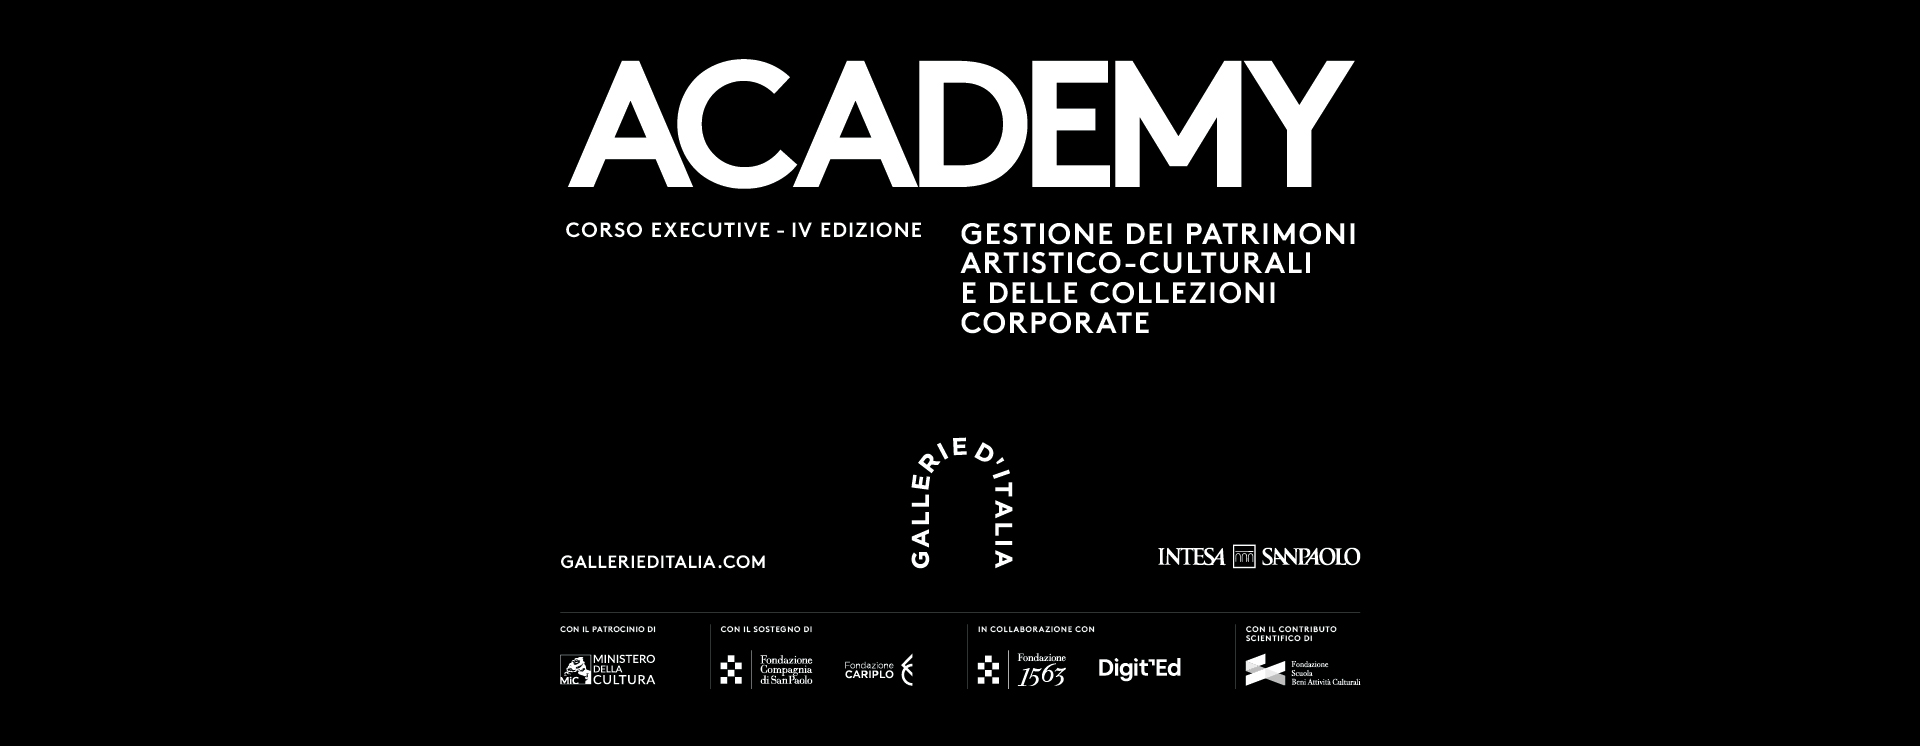 Academy, Corso executive quarta edizione “Gestione dei patrimoni artistico-culturali e delle collezioni corporate" . Loghi: Gallerie d'Italia, Intesa Sanpaolo e partner